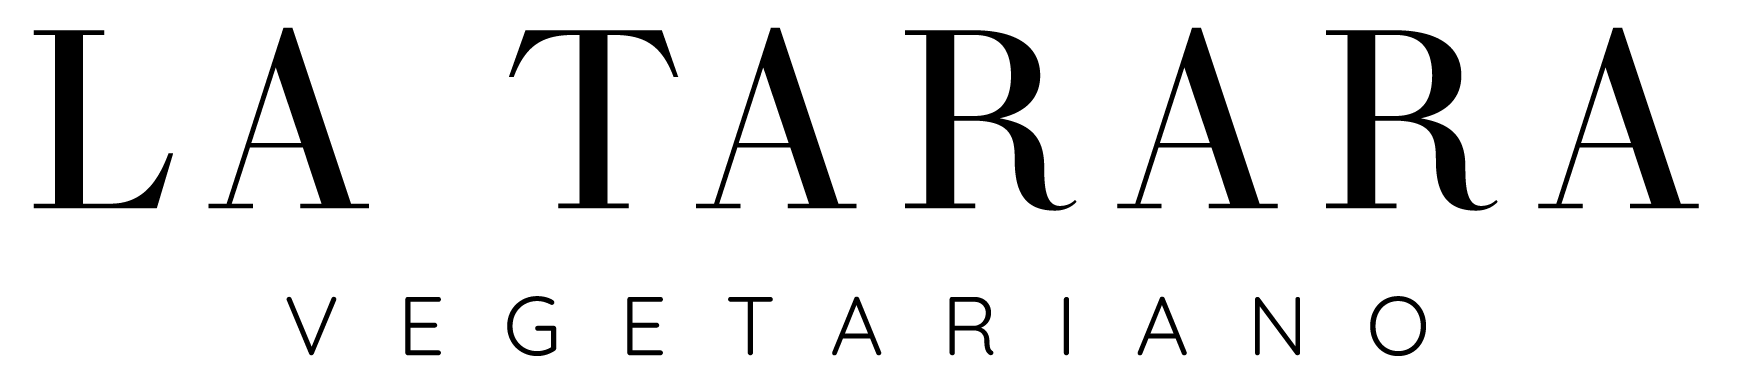 La Tarara de Guaso Logotipo Texto